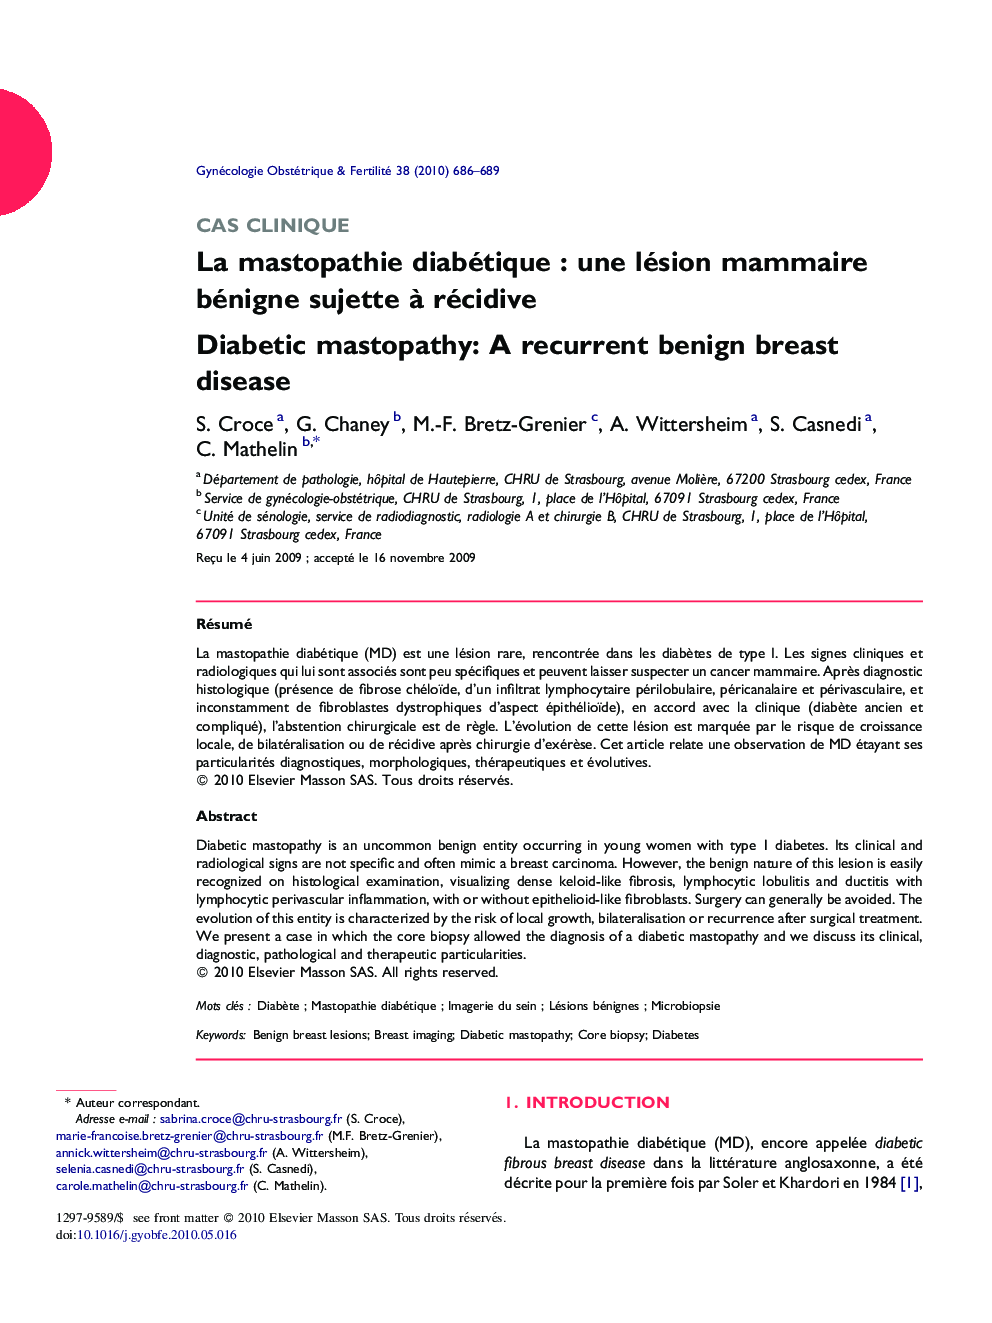 La mastopathie diabétiqueÂ : une lésion mammaire bénigne sujette Ã  récidive